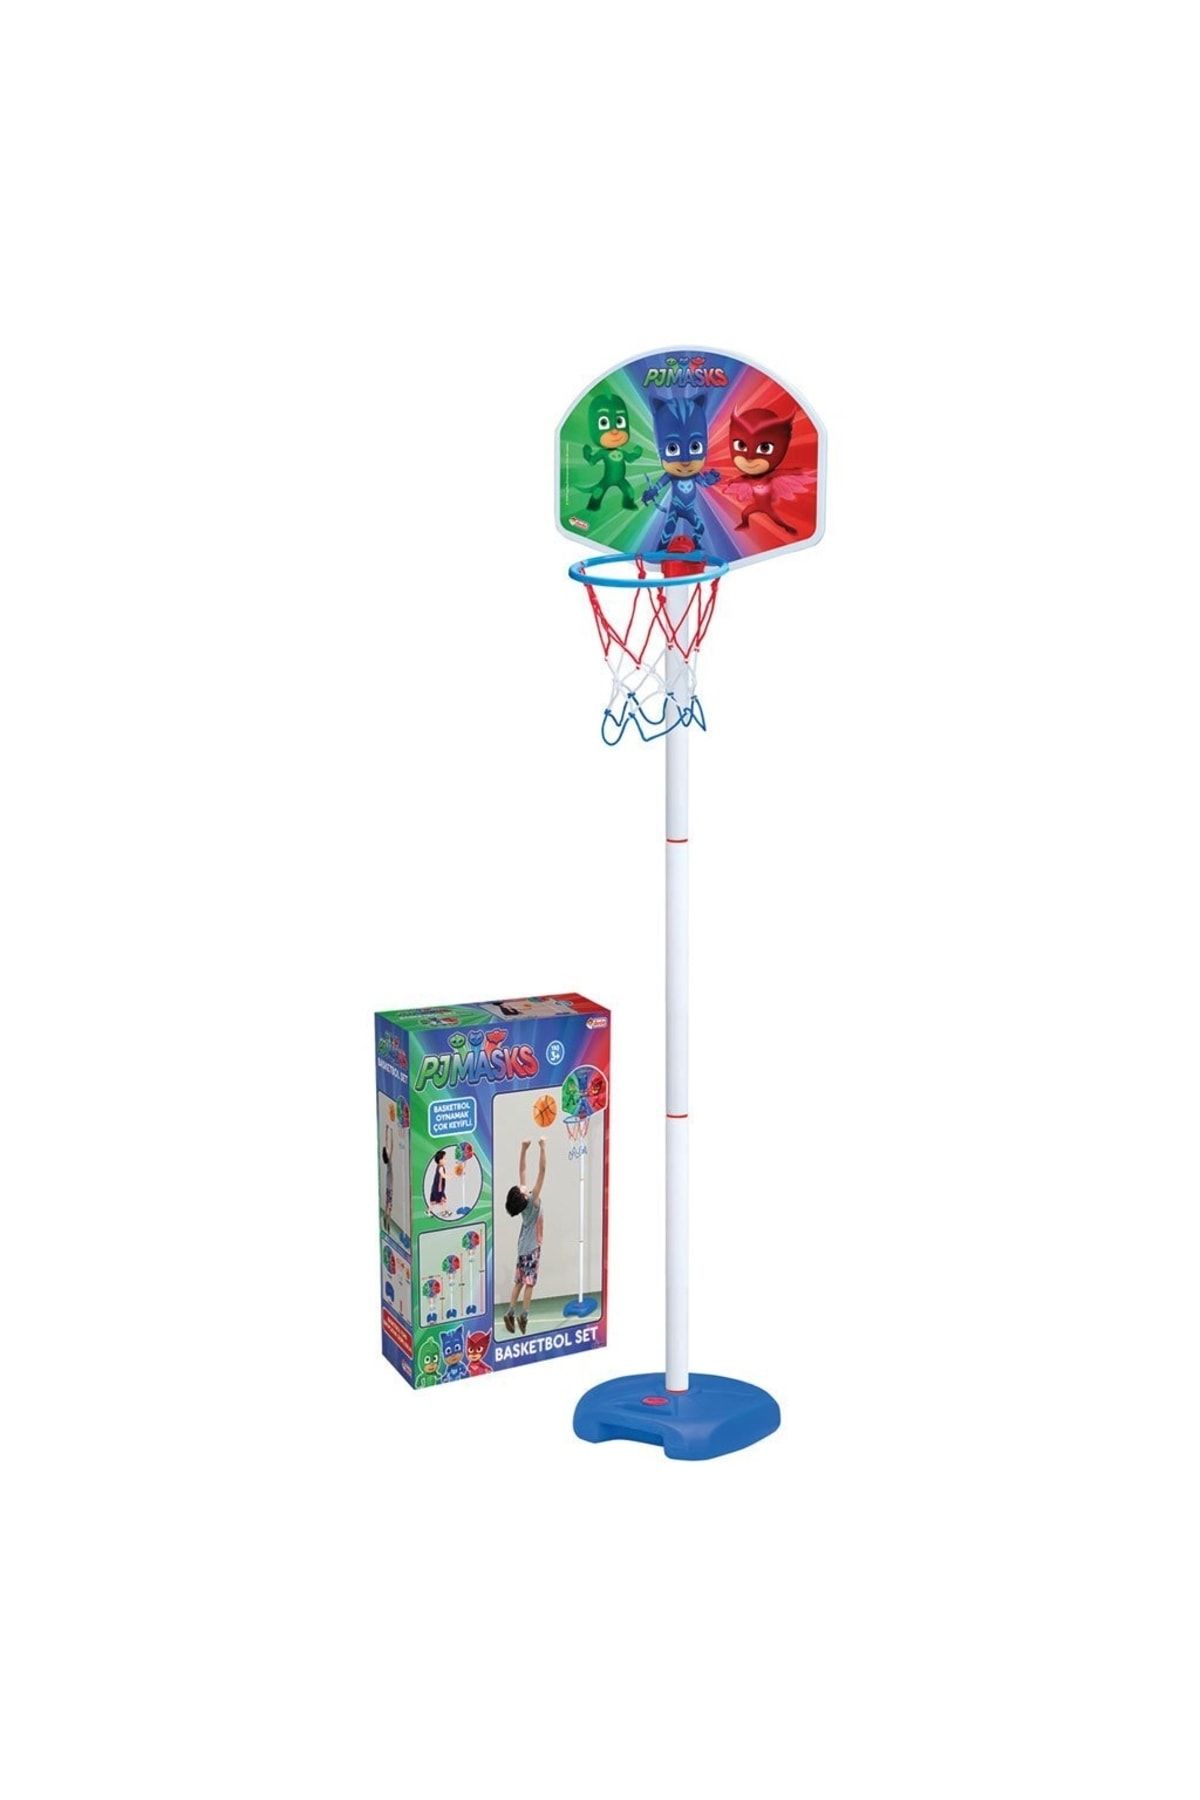 Dede Oyuncak Pj Masks Büyük Ayaklı Basketbol Set